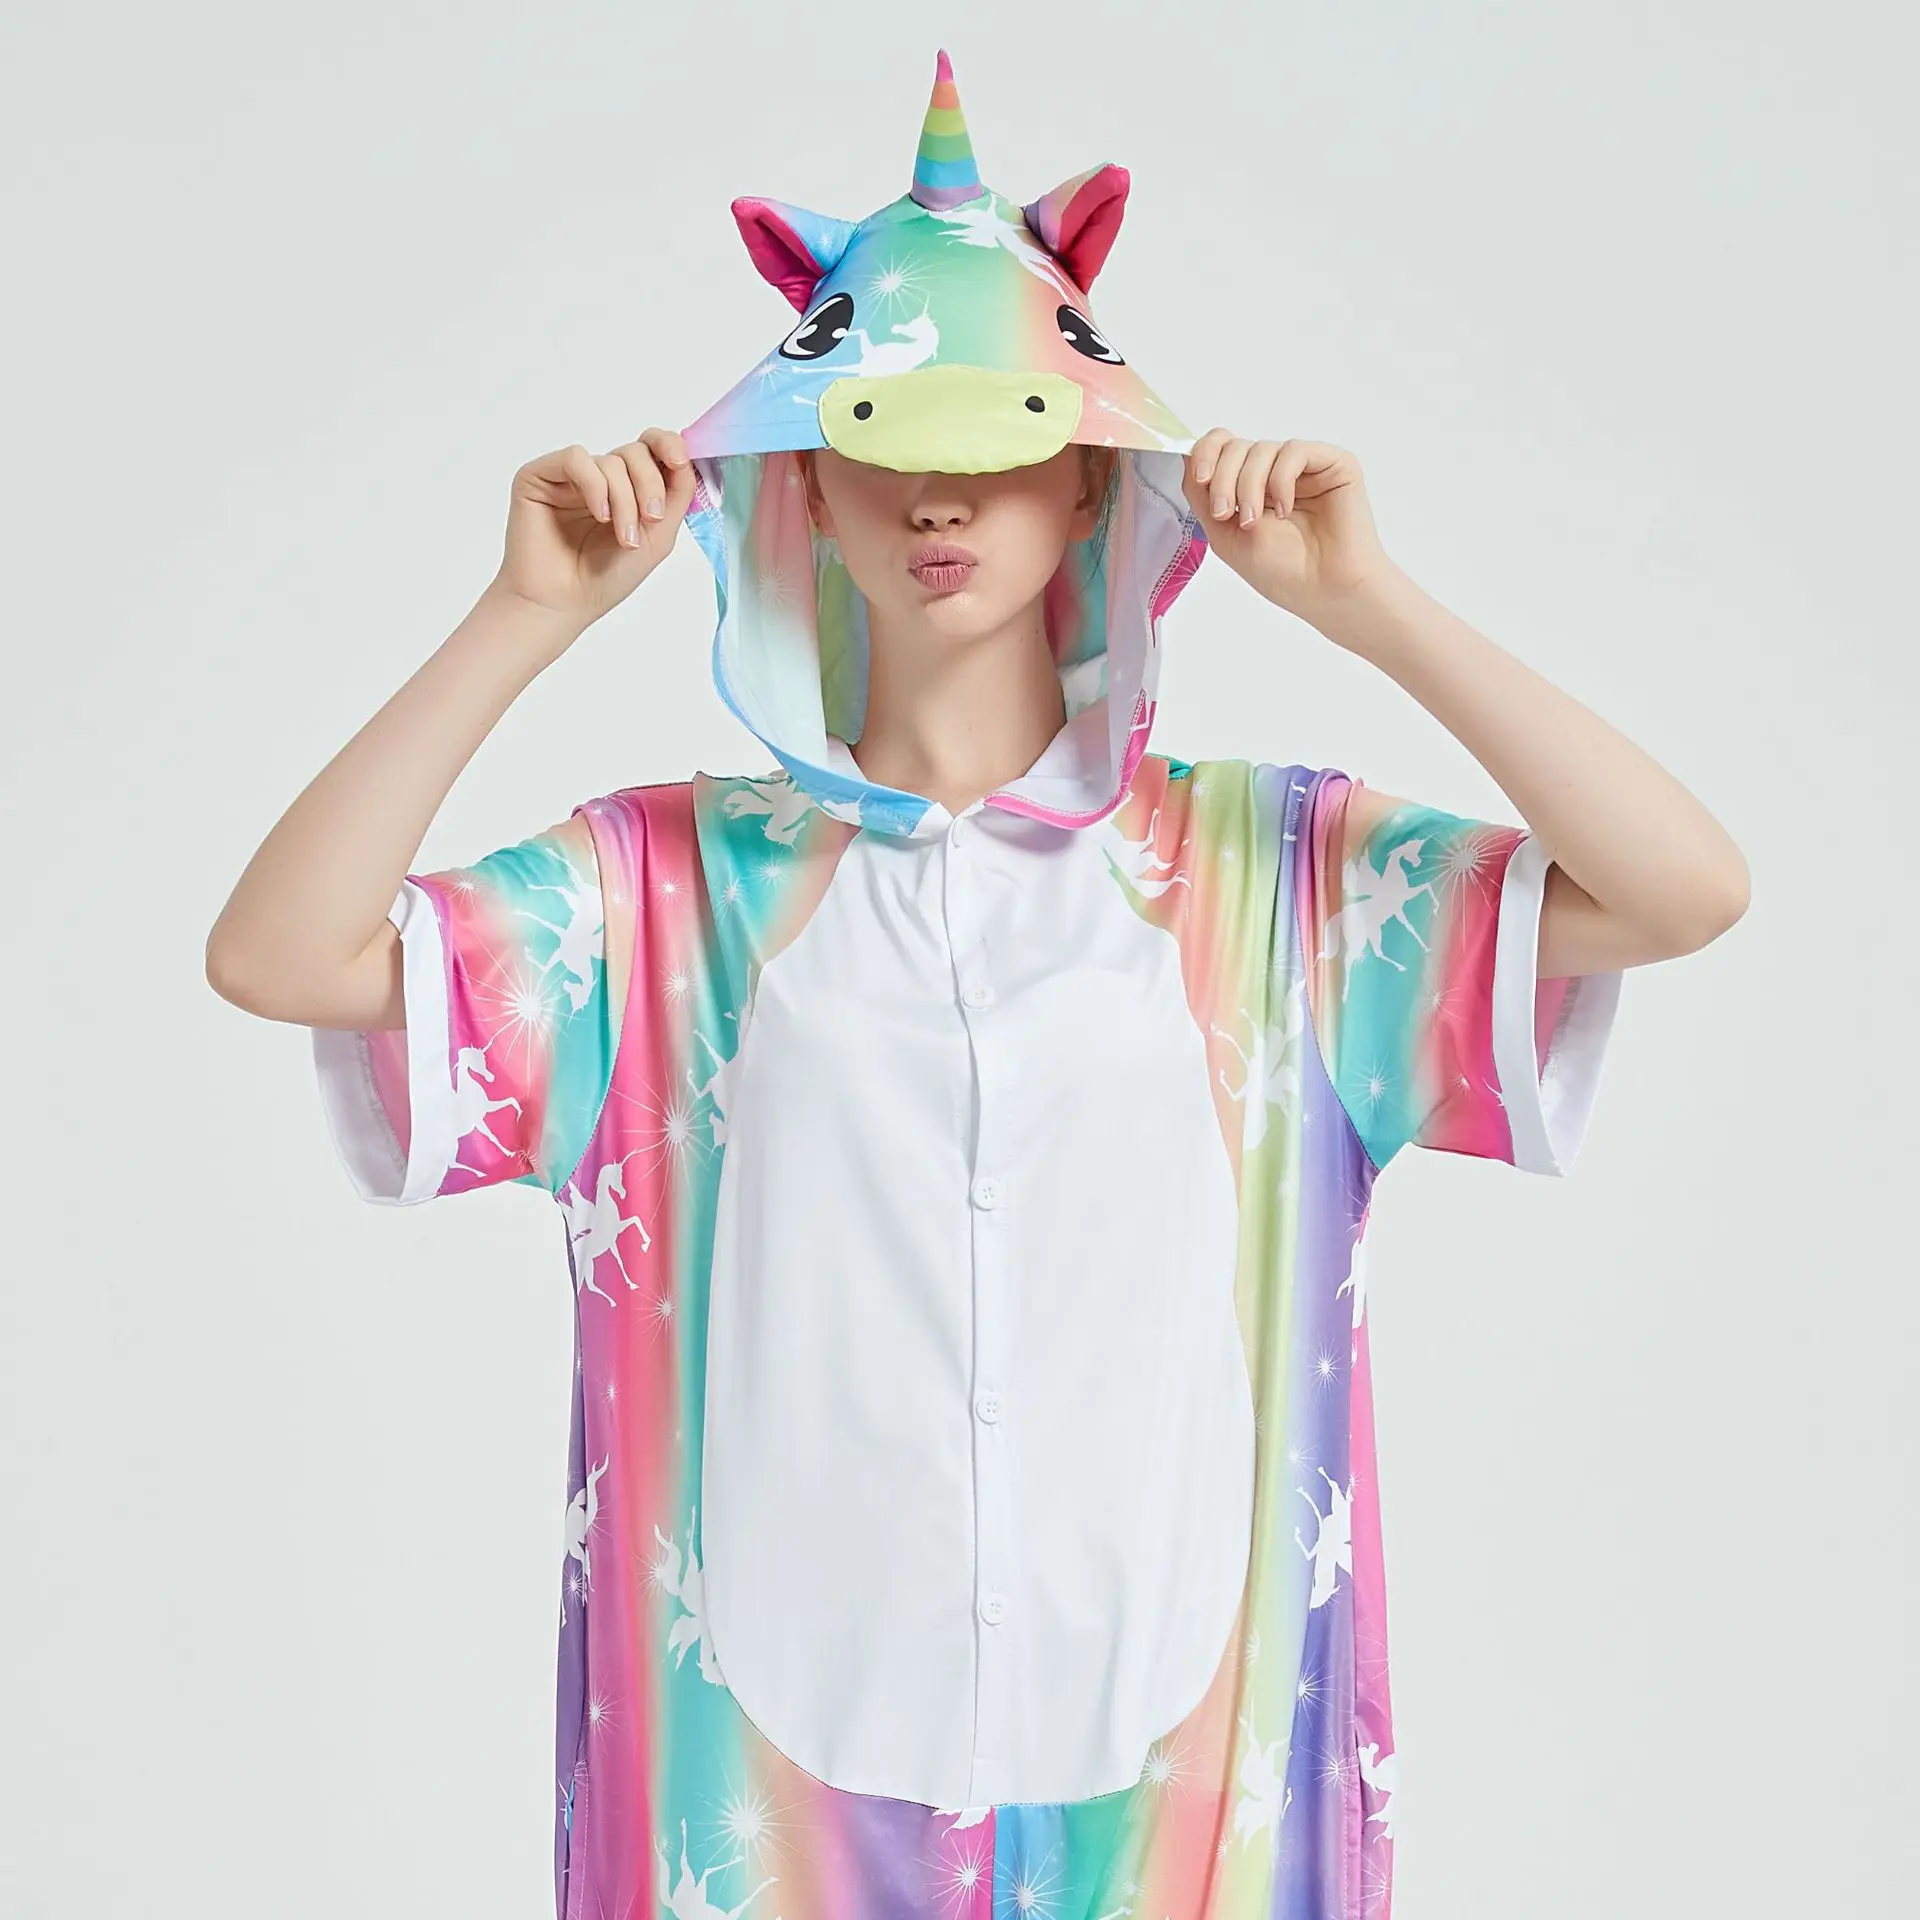 

Family Pajamas Unicorn Animal Cosplay Home Sleepwear Jumpsuit Adult Short Sleeve Onesie Summer Pijamas Kigurumi